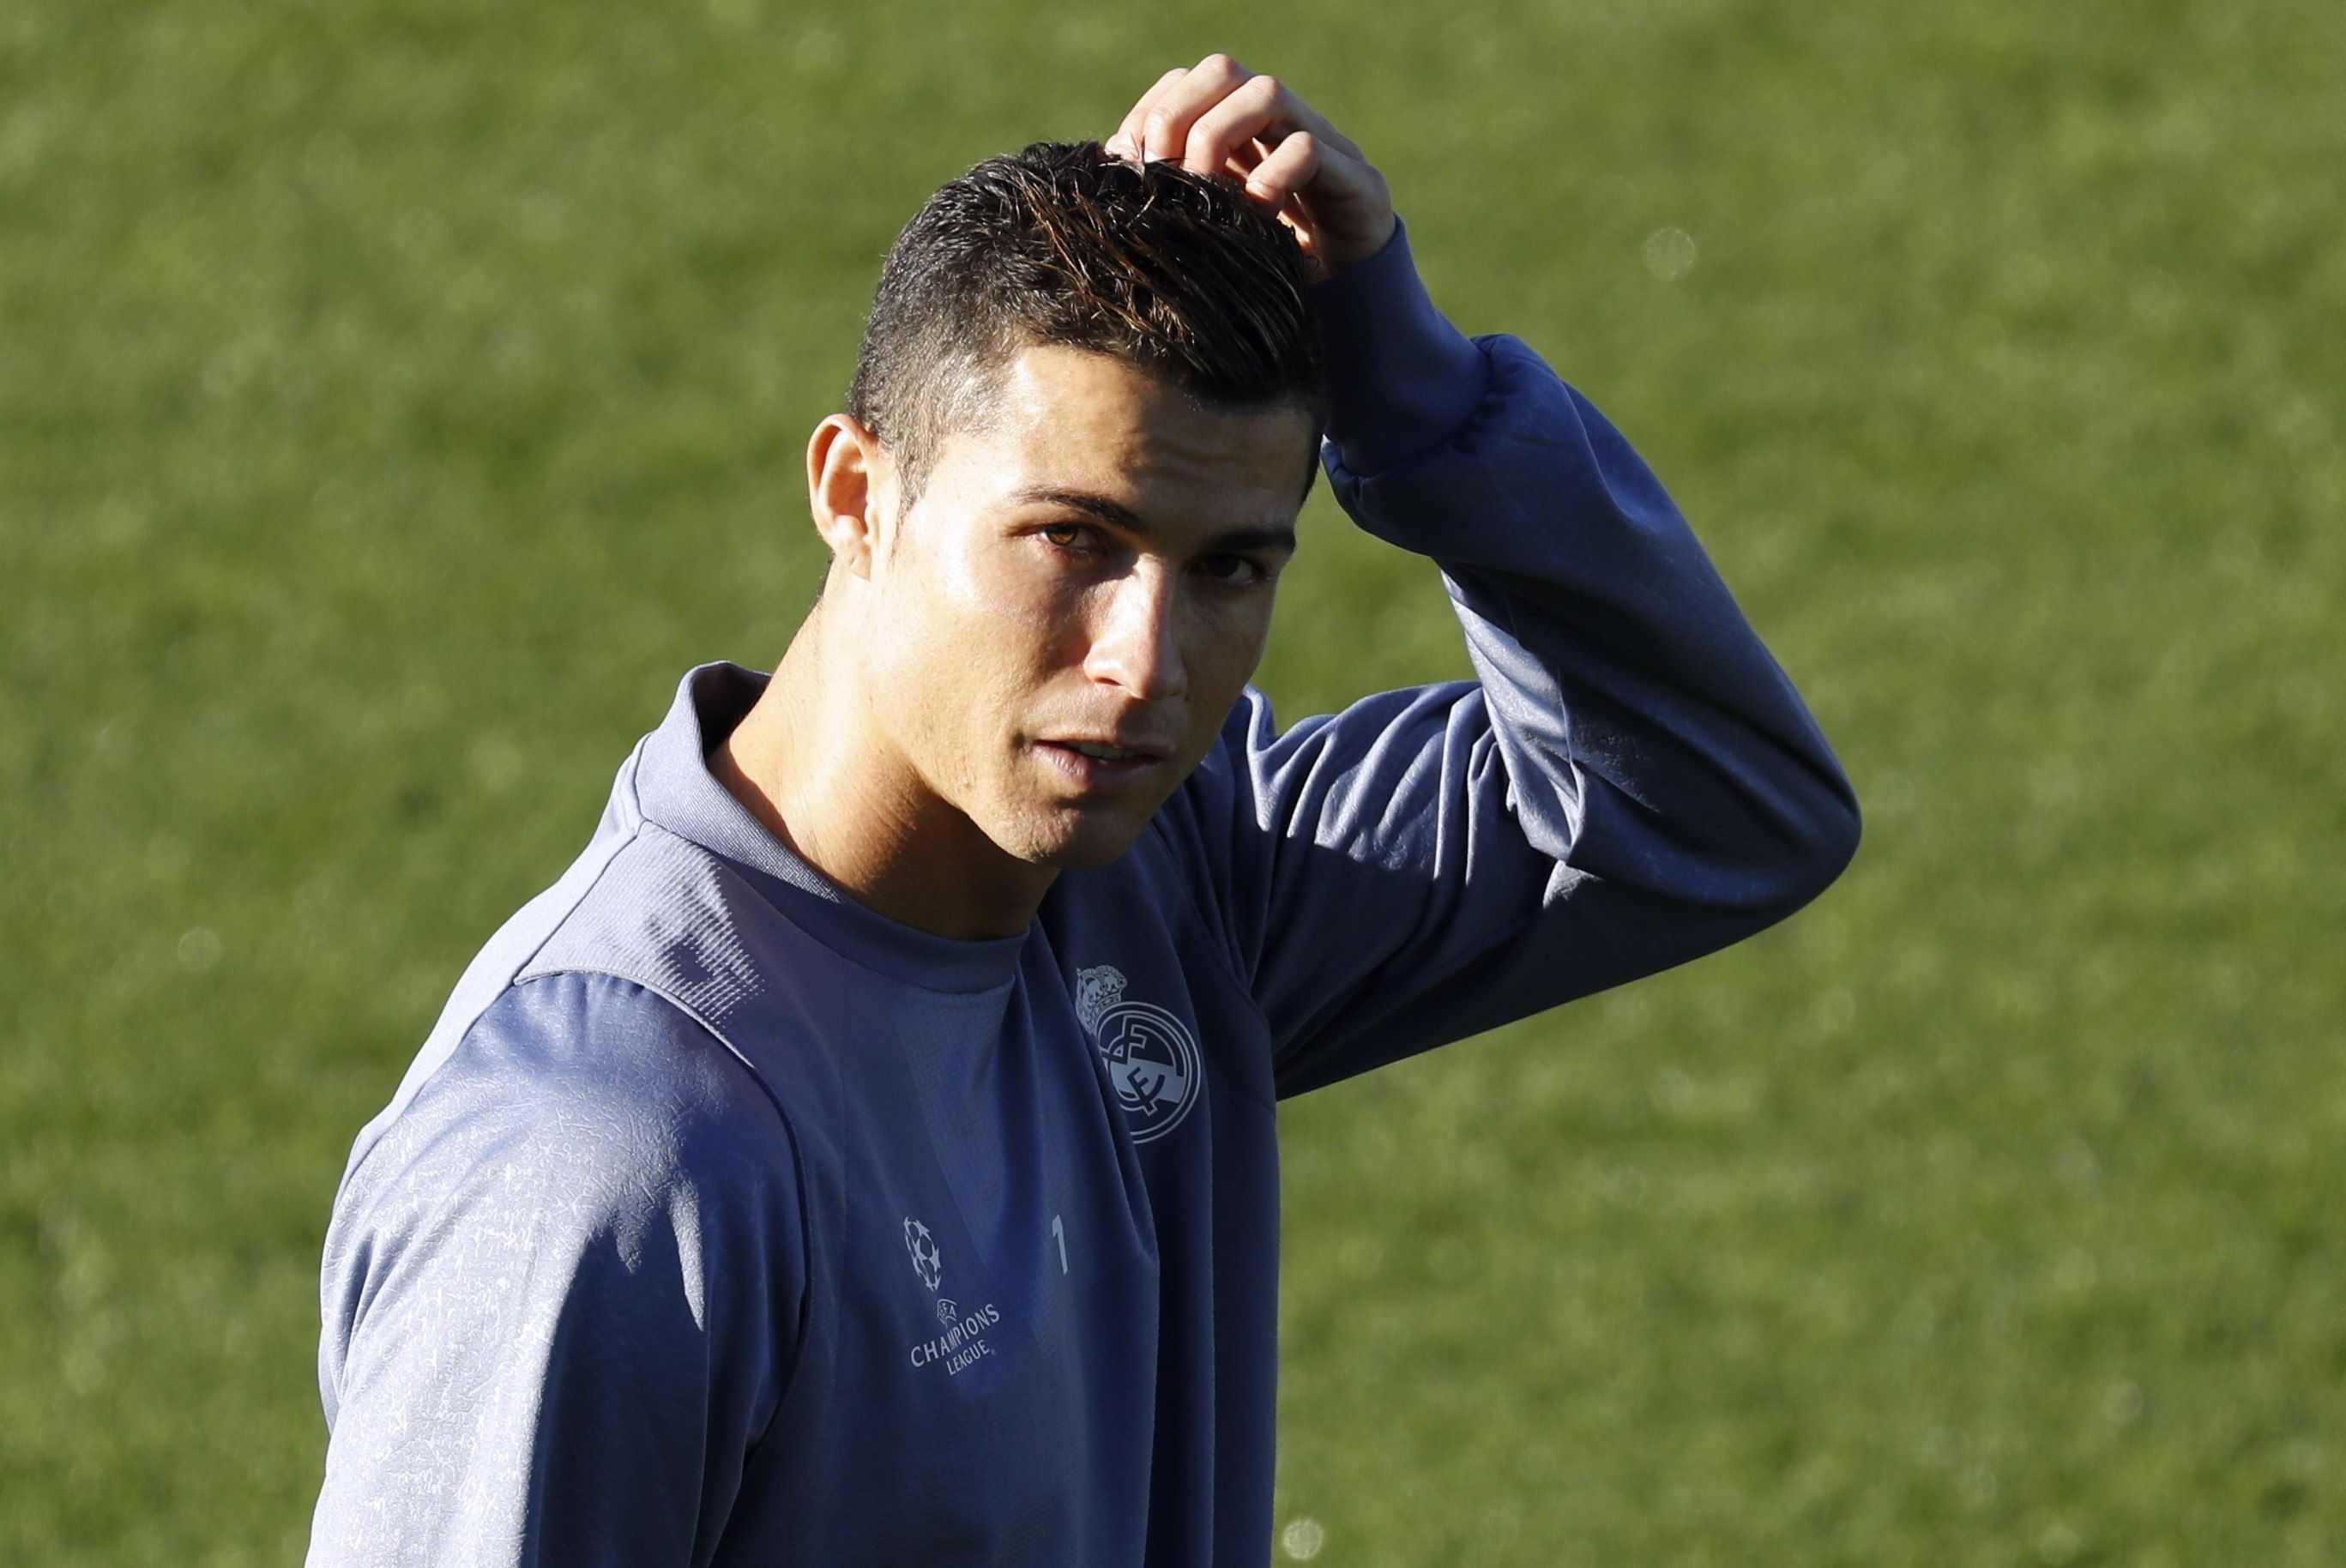 Cristiano Ronaldo, citat a declarar el 31 de juliol pel frau de 14,7 milions